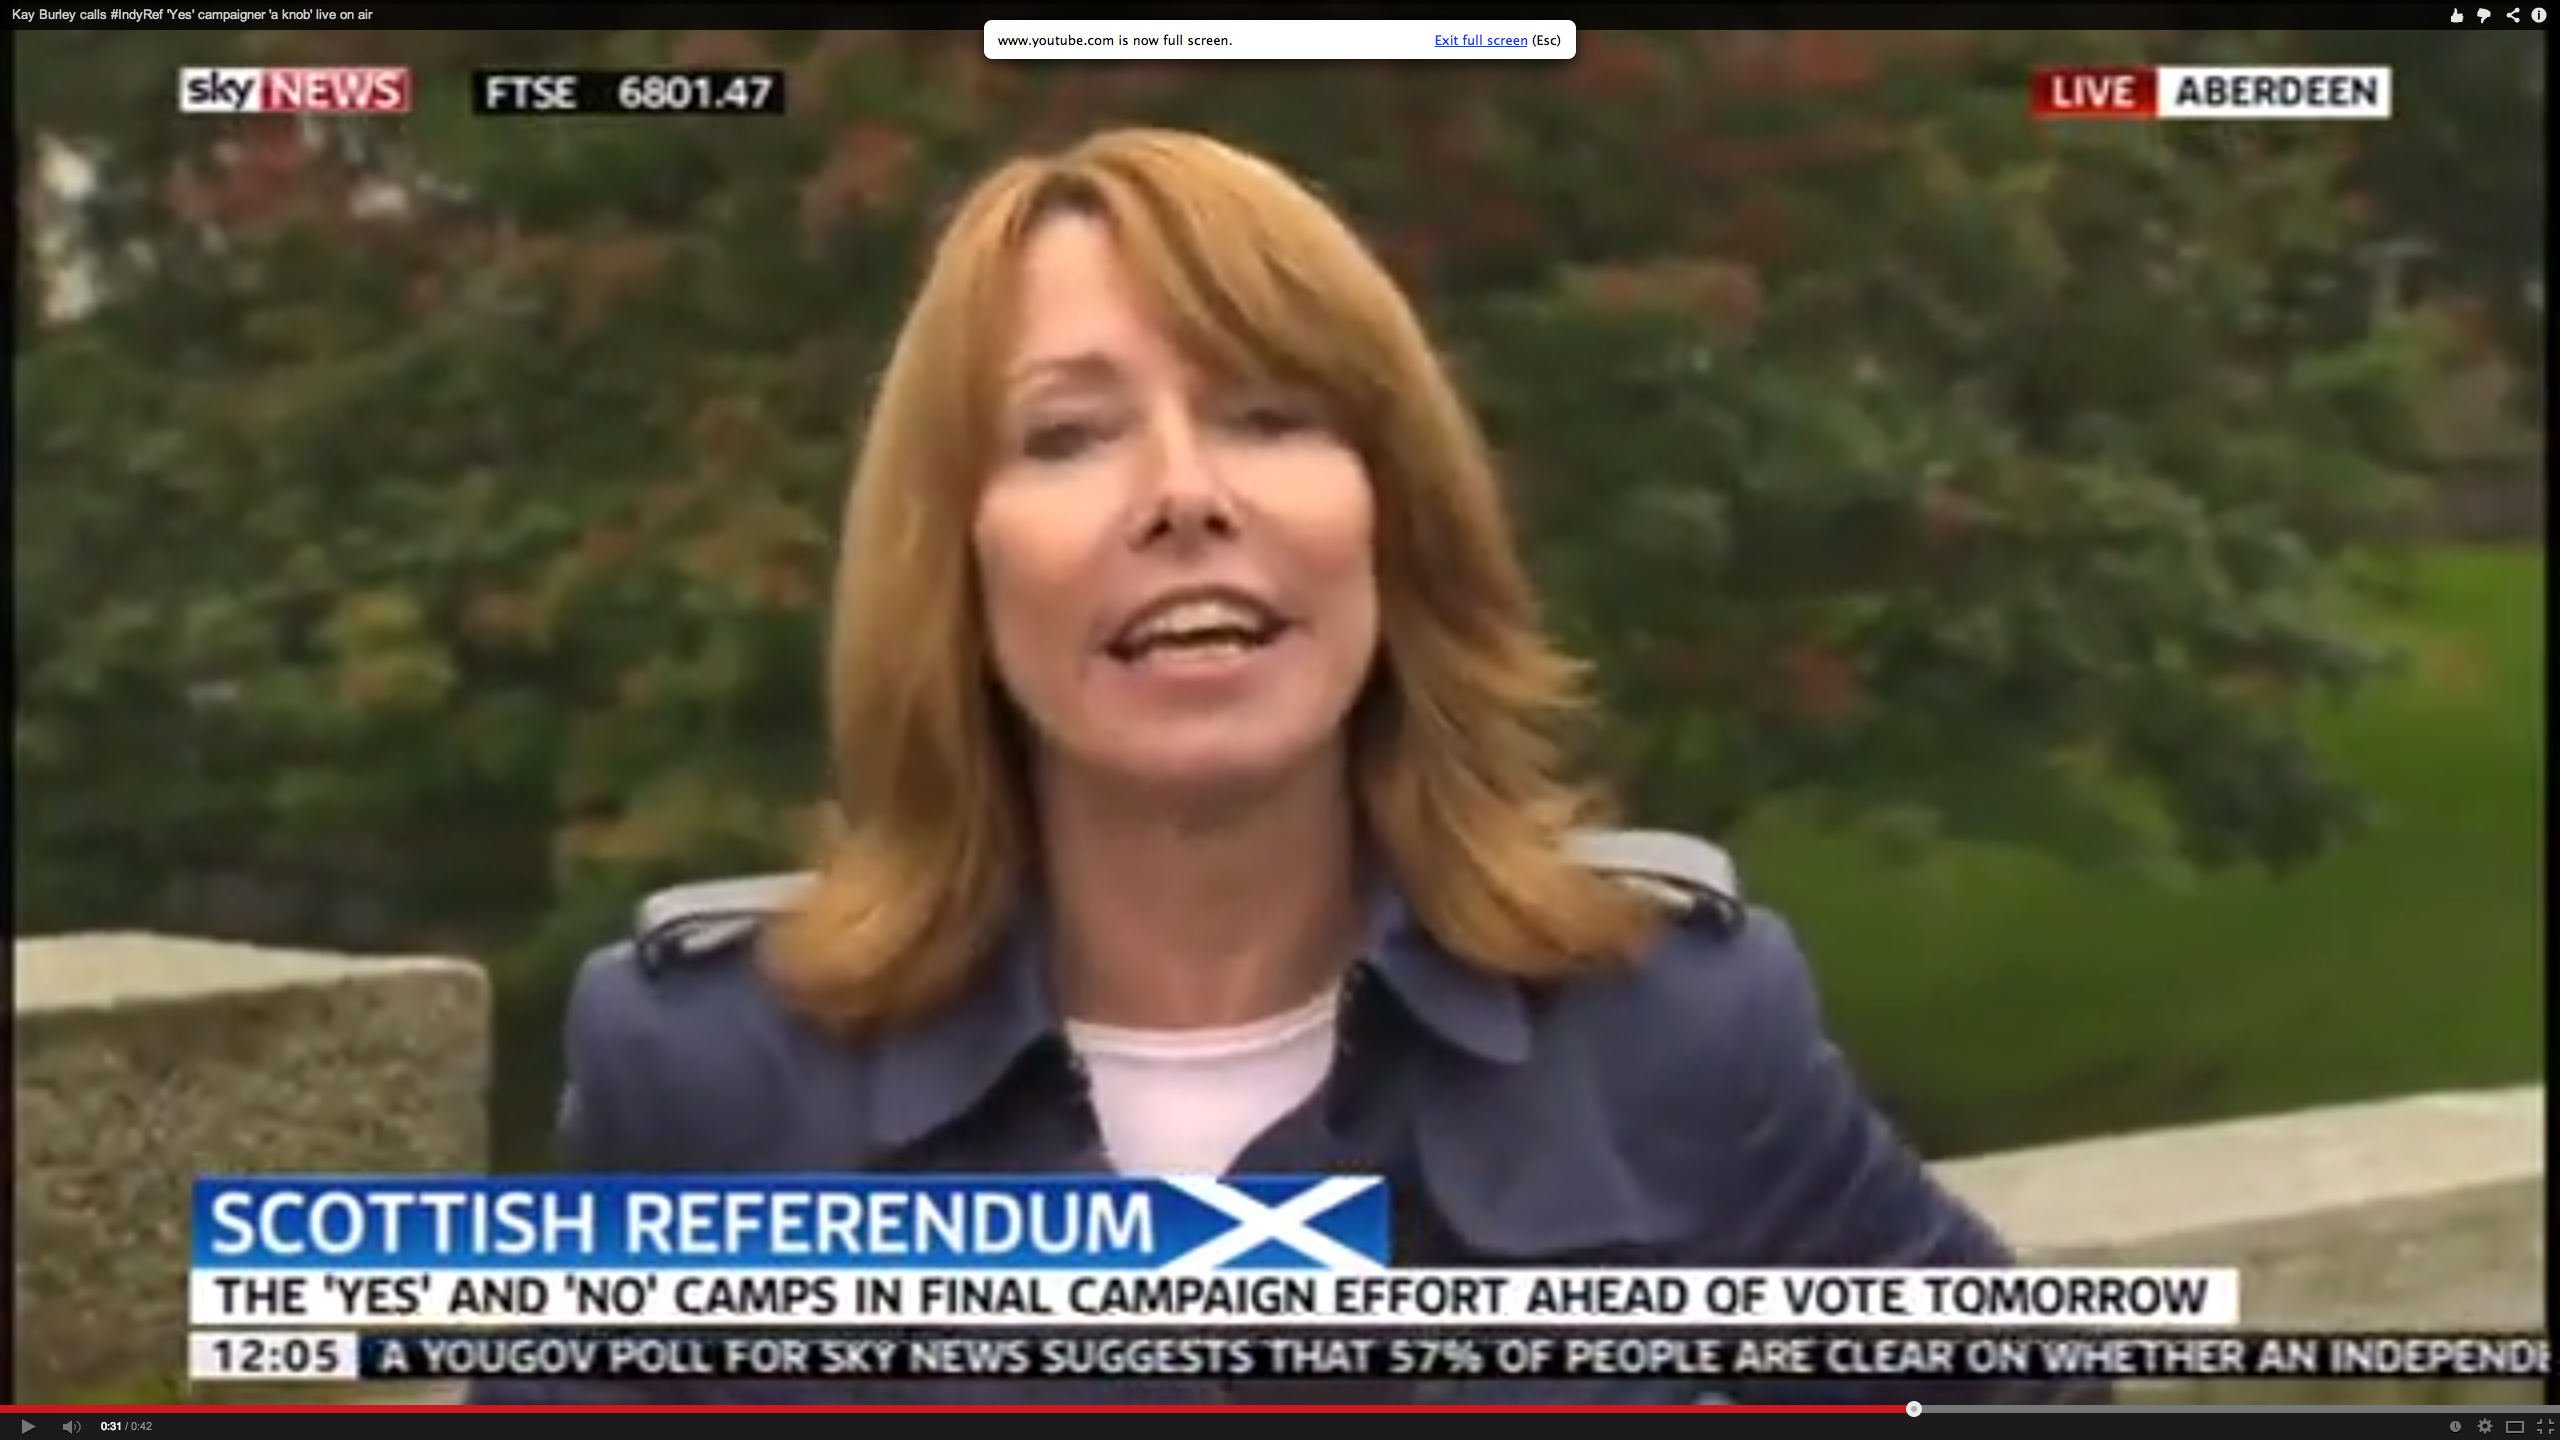 Kay Burley of Sky News